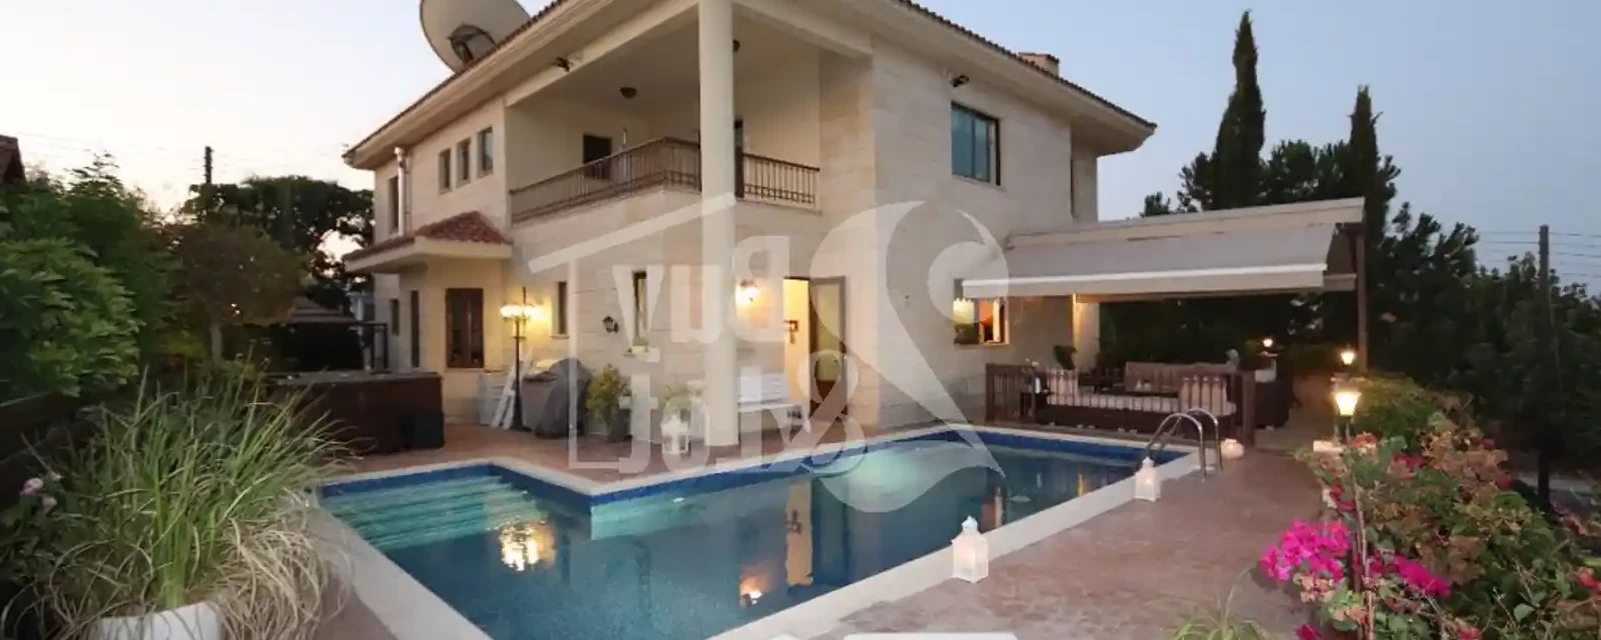 4-bedroom villa to rent €9.000, image 1